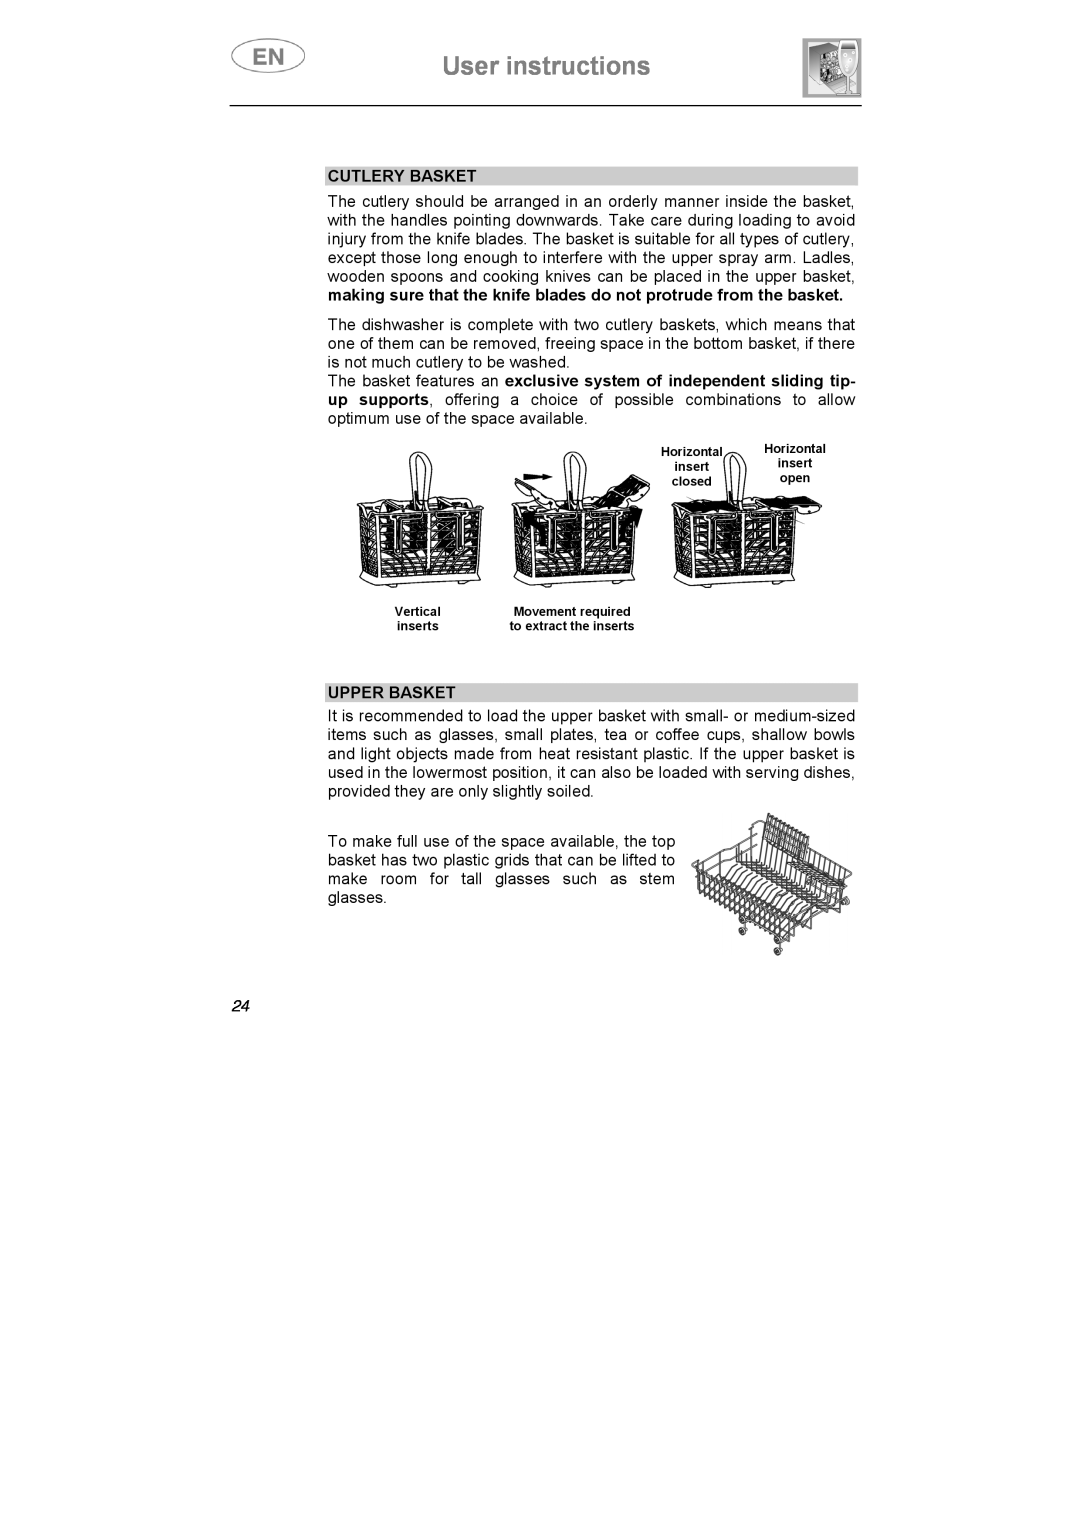 Smeg STA645Q manual User instructions, Cutlery Basket, Upper Basket 